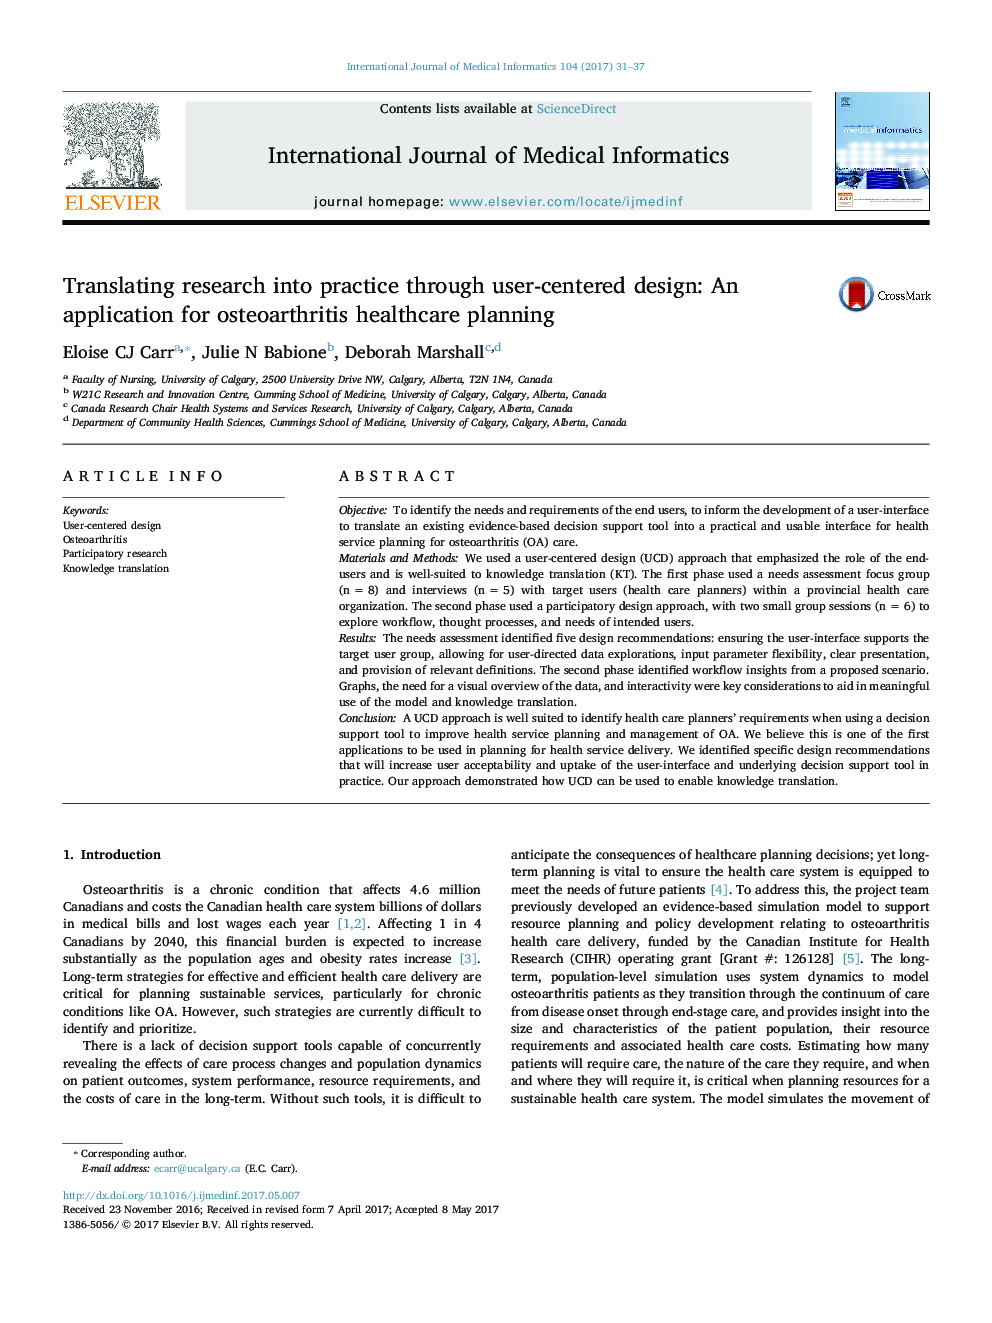 ترجمه تحقیق به عمل از طریق طراحی کاربر محور: یک برنامه کاربردی برای برنامه ریزی مراقبت های بهداشتی استئوآرتریت 